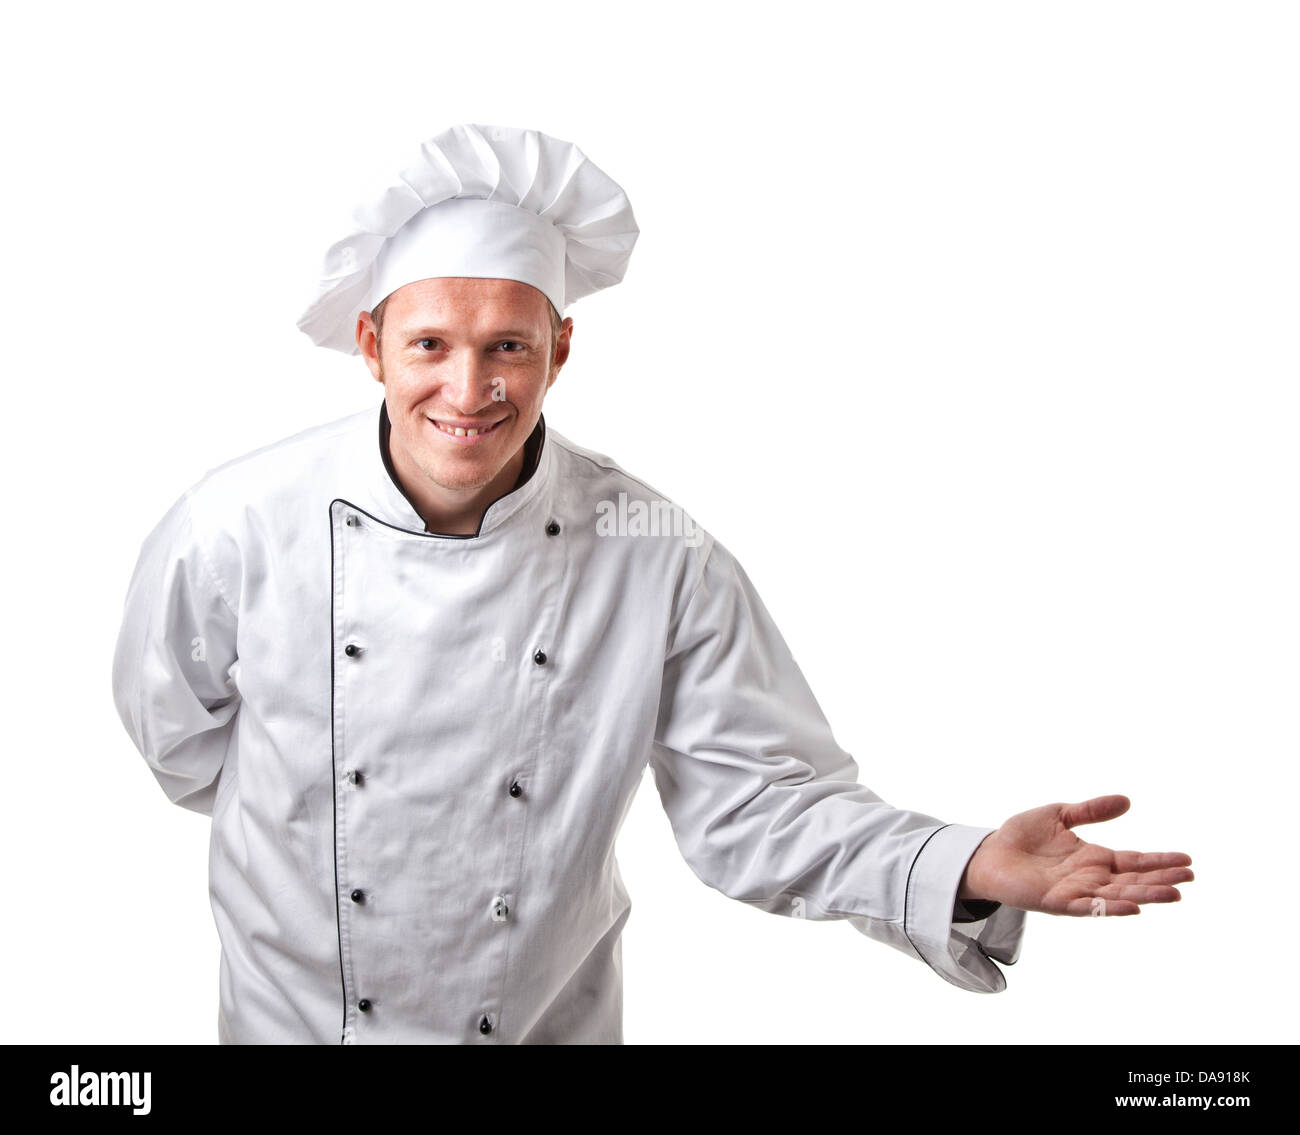 Portrait of caucasian man with uniforme chef Banque D'Images